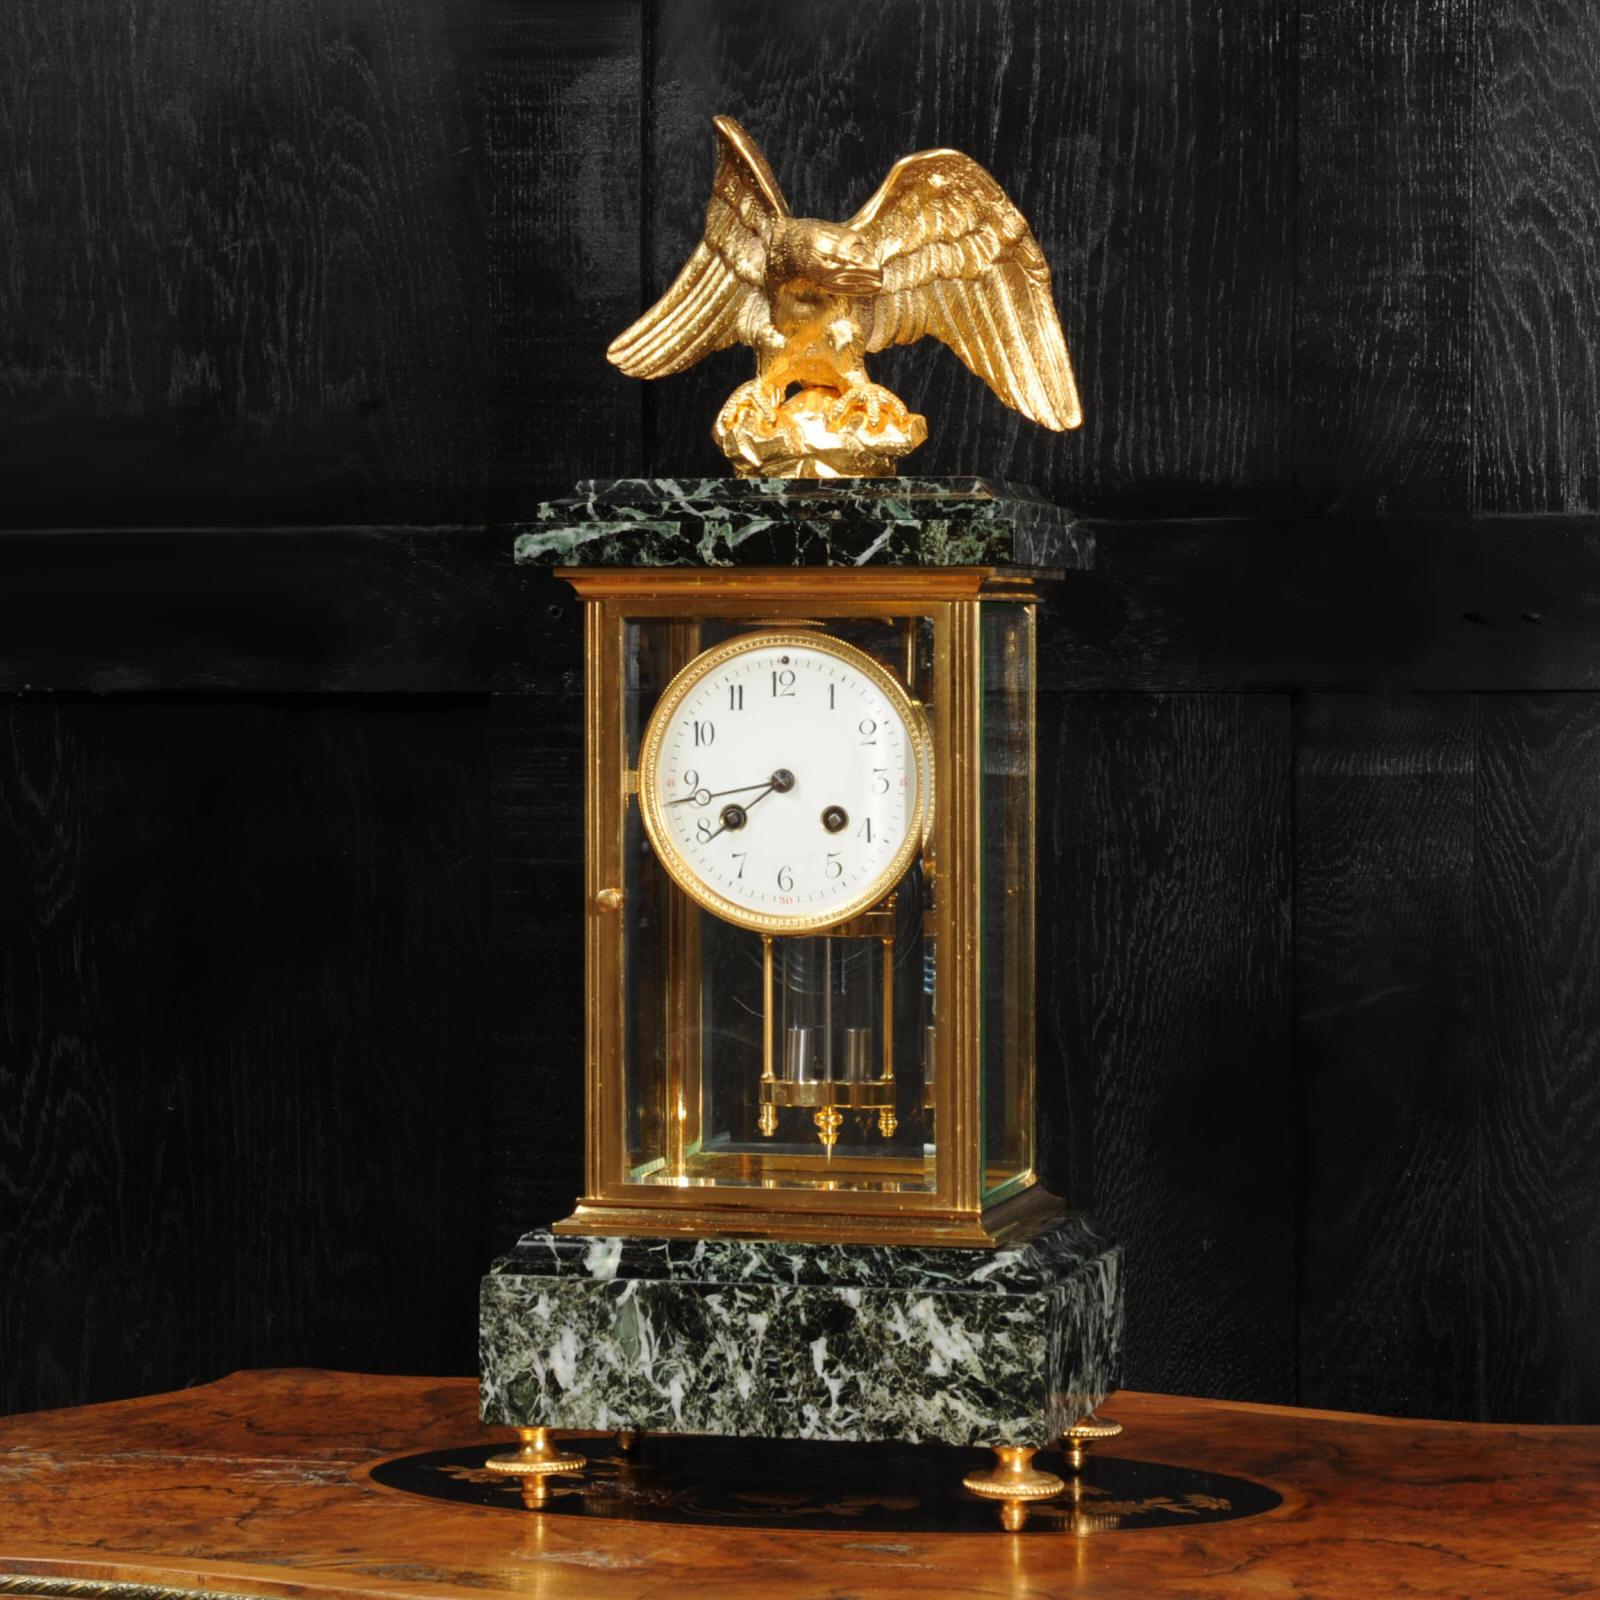 Une étonnante horloge française originale par l'illustre fabricant Charles Hour, vers 1890. Il s'agit d'un modèle Empire d'une grande sobriété, réalisé dans un somptueux spécimen de marbre vert panaché et en ormolu (bronze finement doré). Au sommet